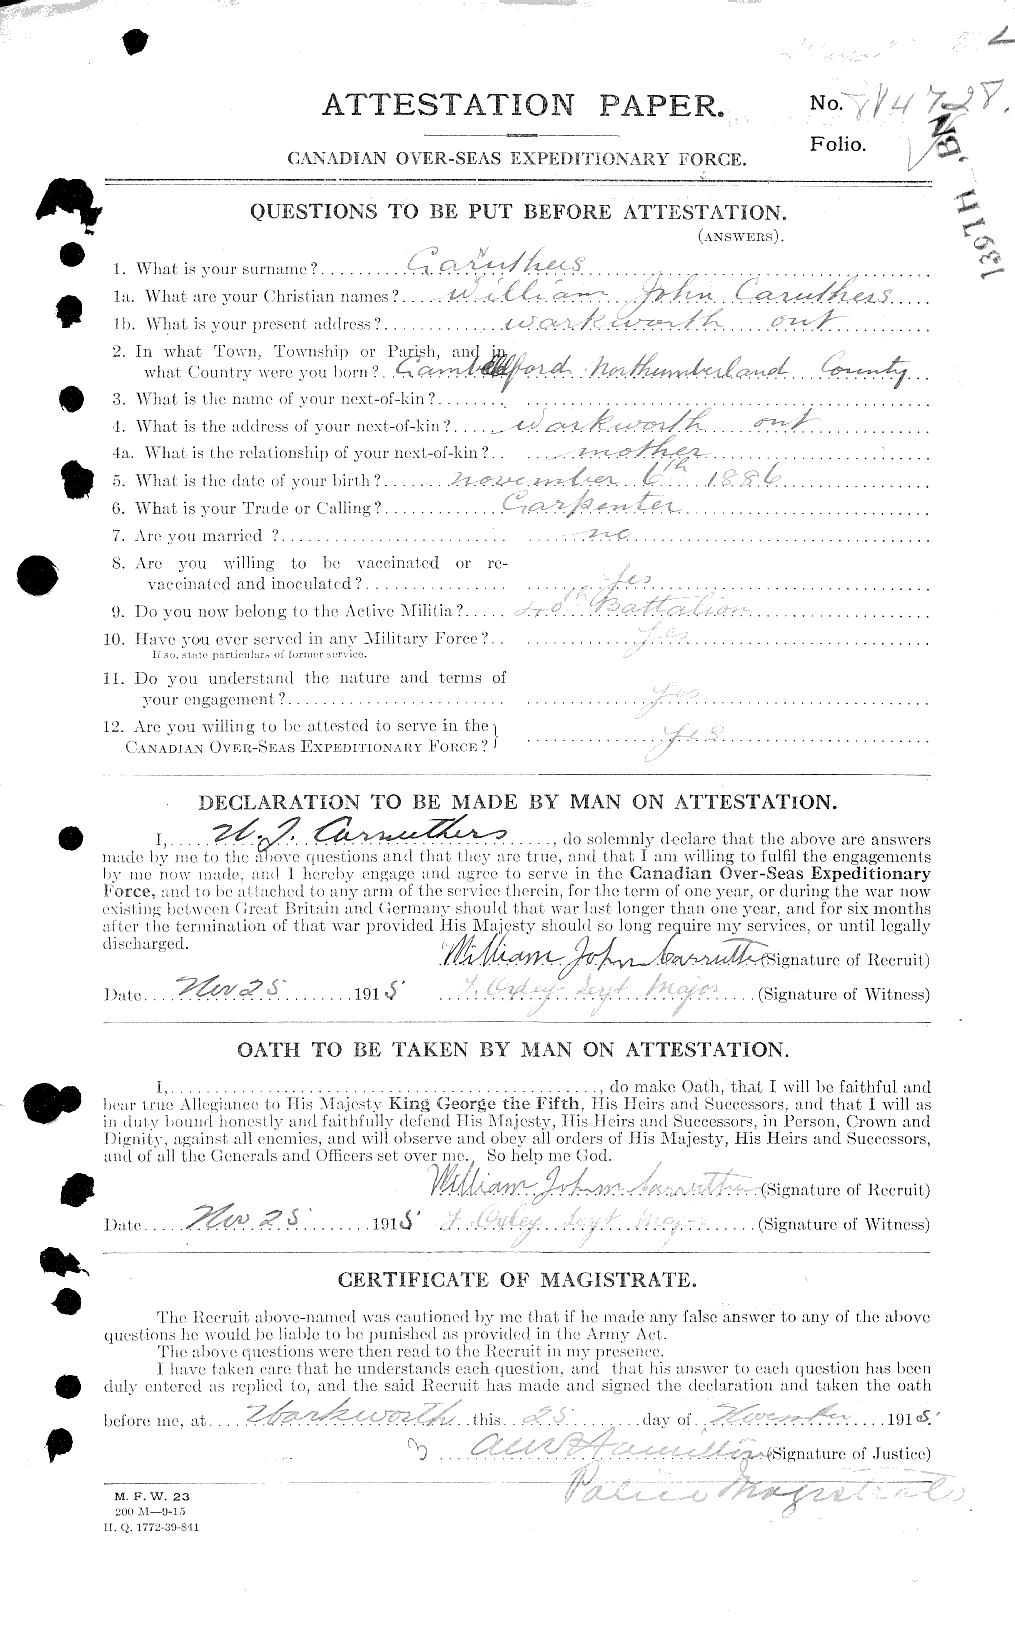 Dossiers du Personnel de la Première Guerre mondiale - CEC 011462a